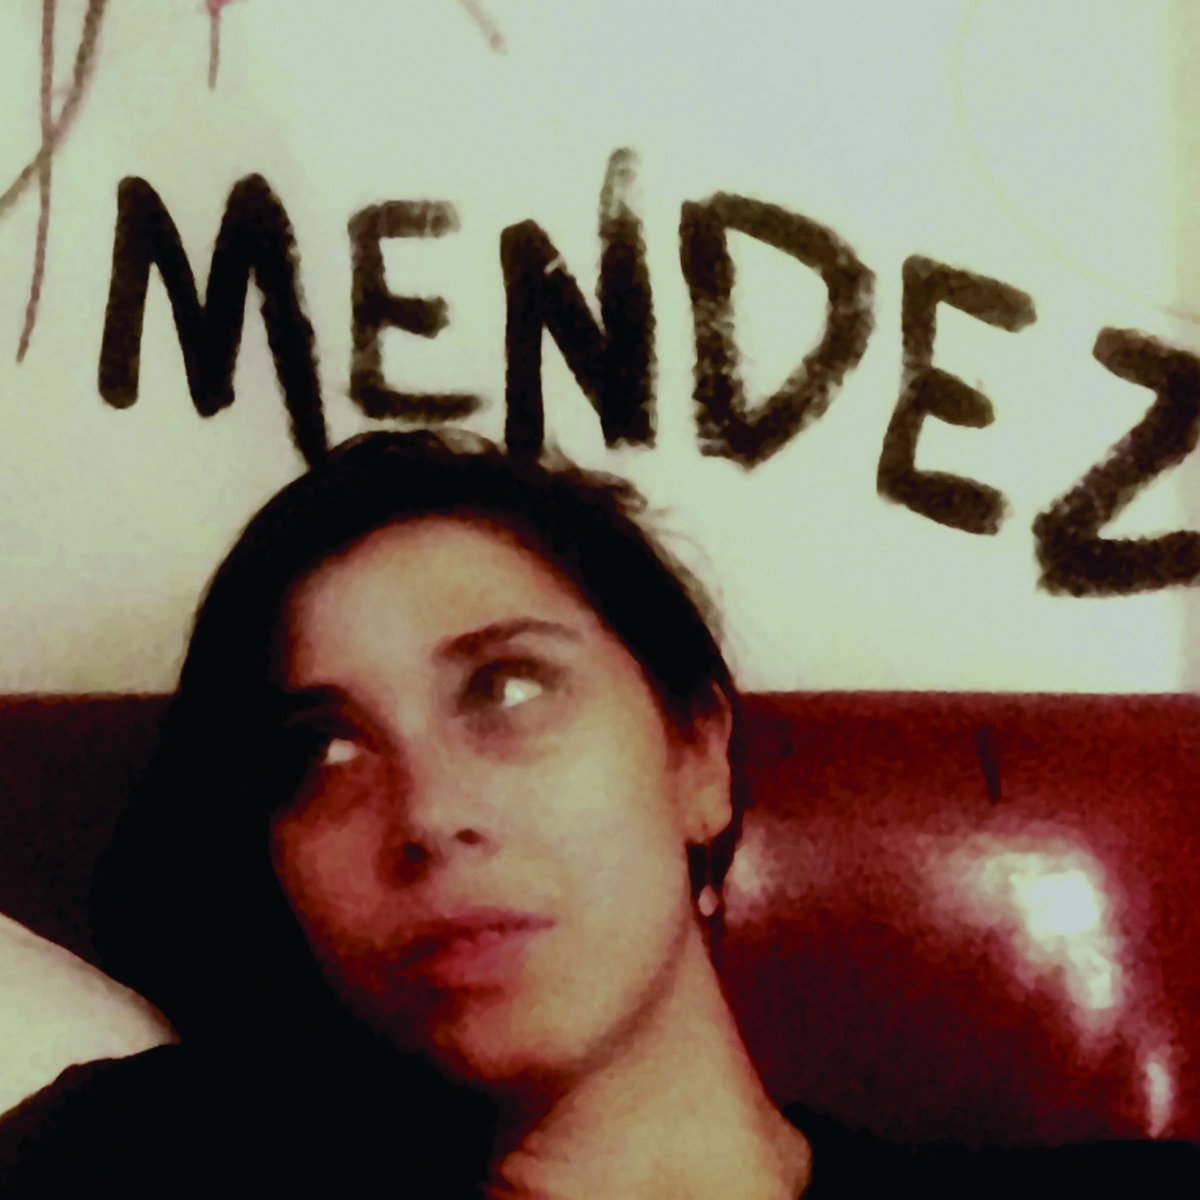 Mendez -/ picture